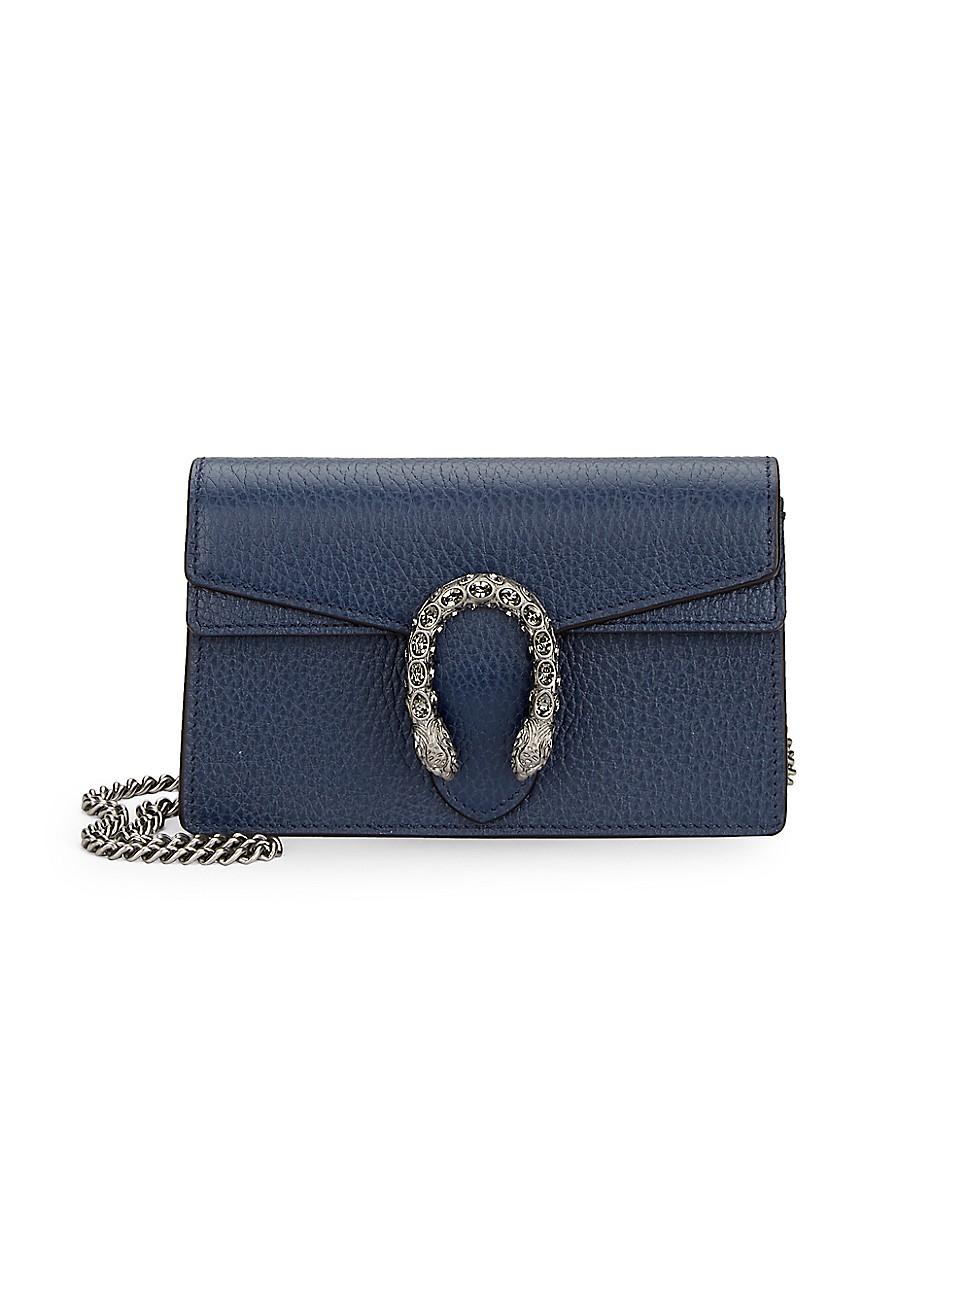 Gucci Dionysus Leather Super Mini Bag in Blue | Lyst